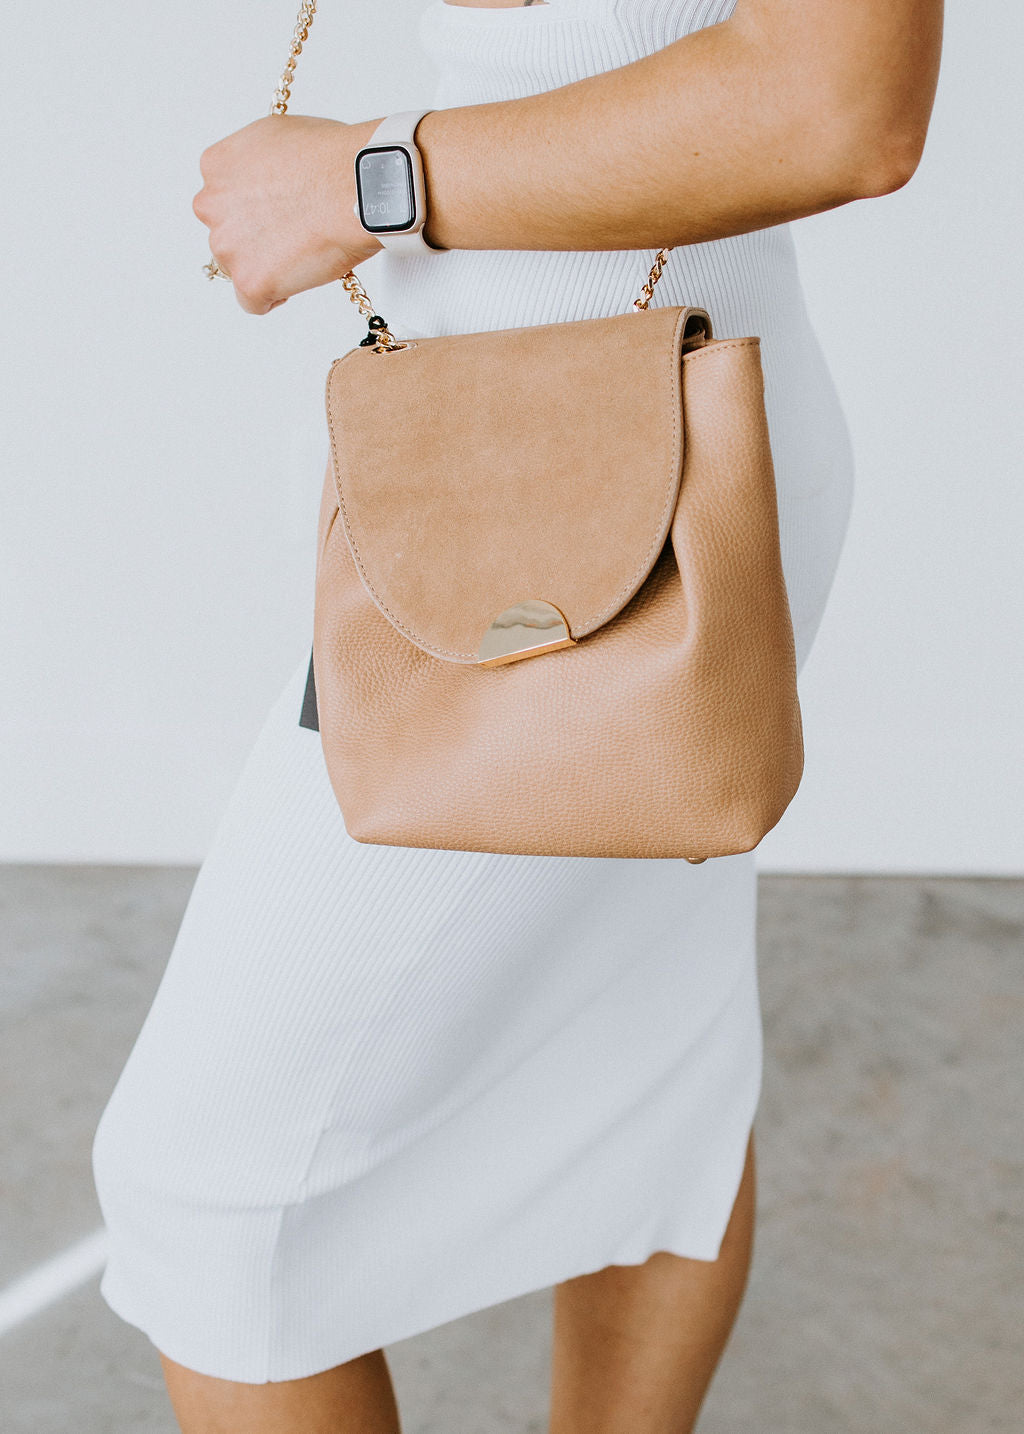 Moda Luxe Abby Crossbody Bag in Natural